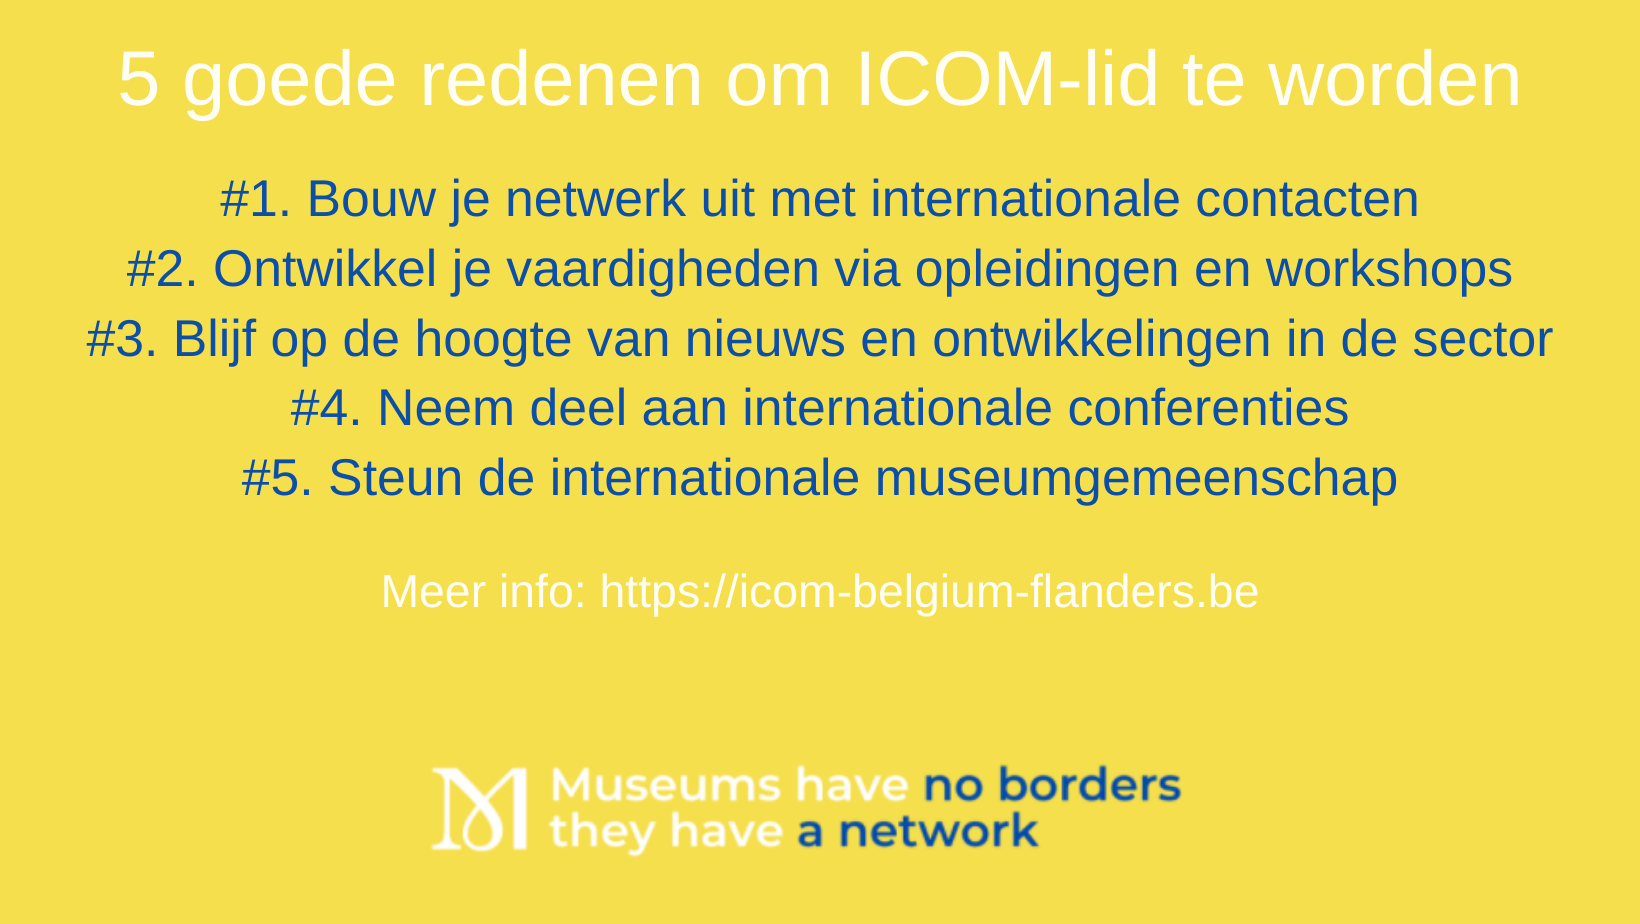 Meer info httpsicom-belgium-flanders.be (1)